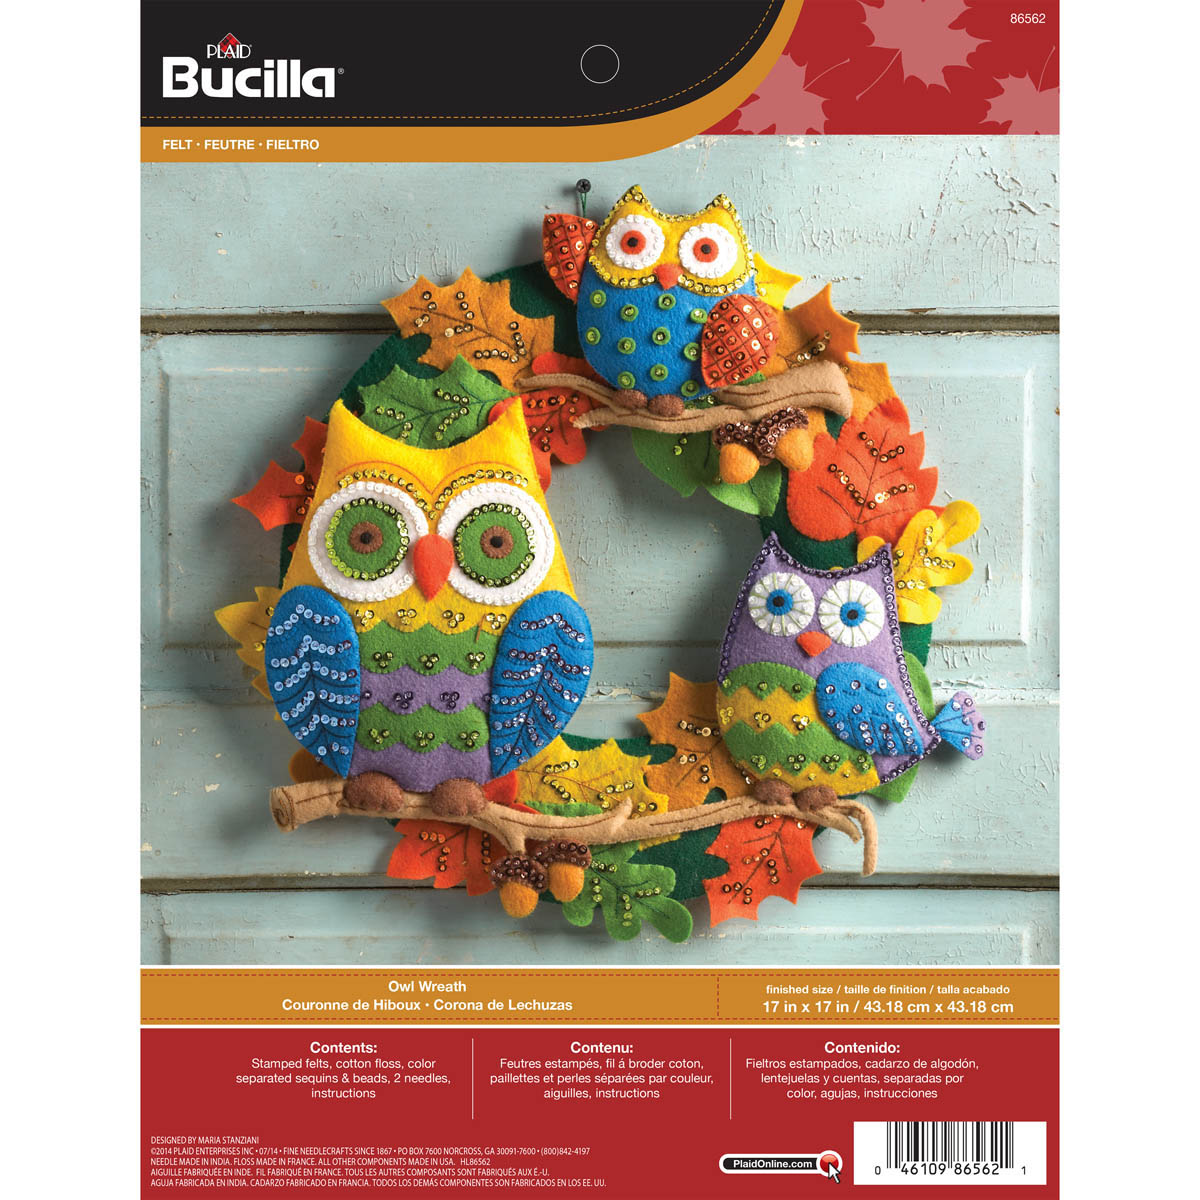 Bucilla ® Seasonal - Felt - Home Decor - Owl Wreath - 86562